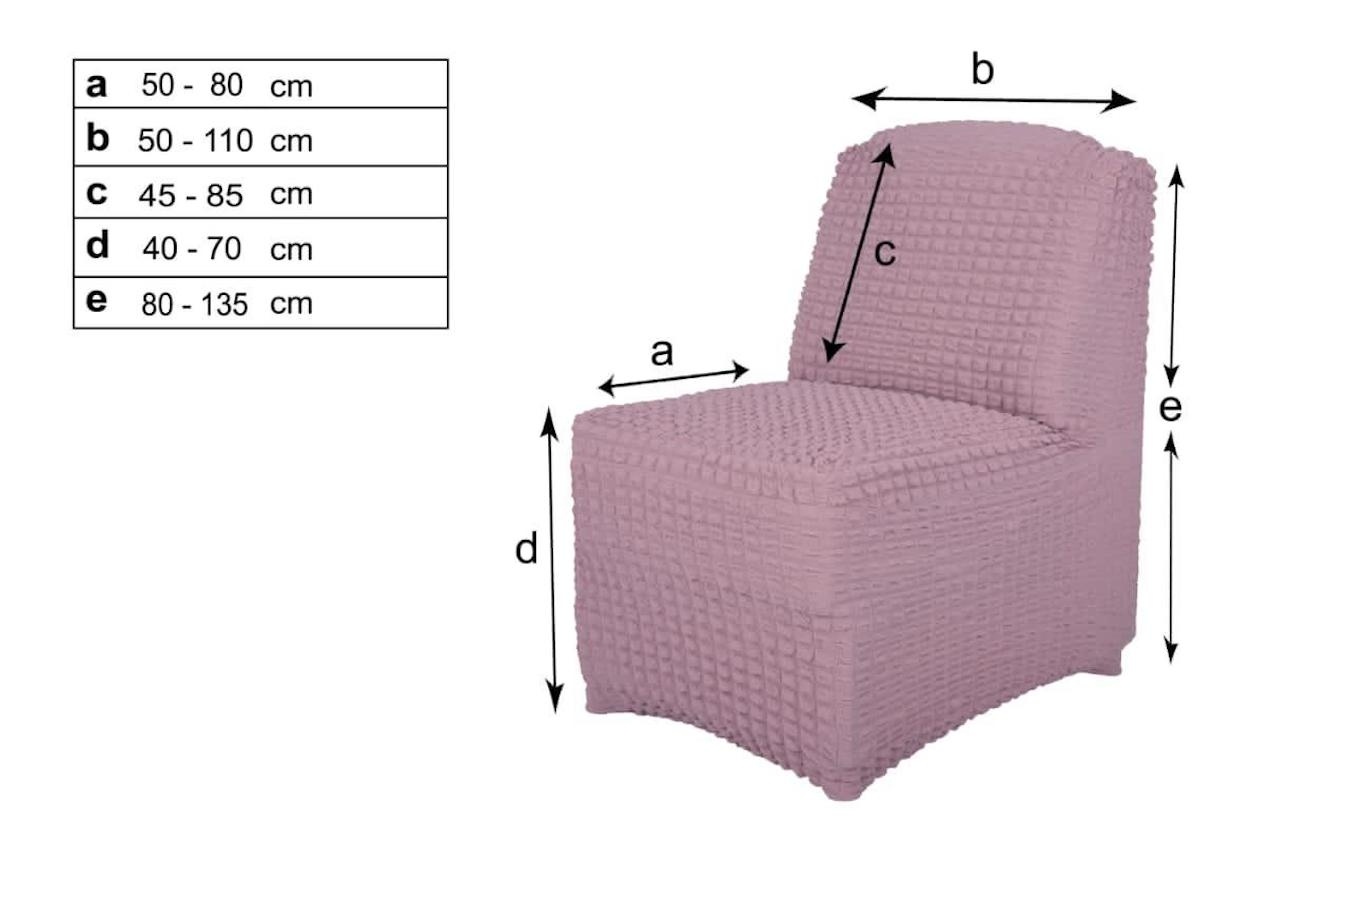 кресло диван без подлокотников